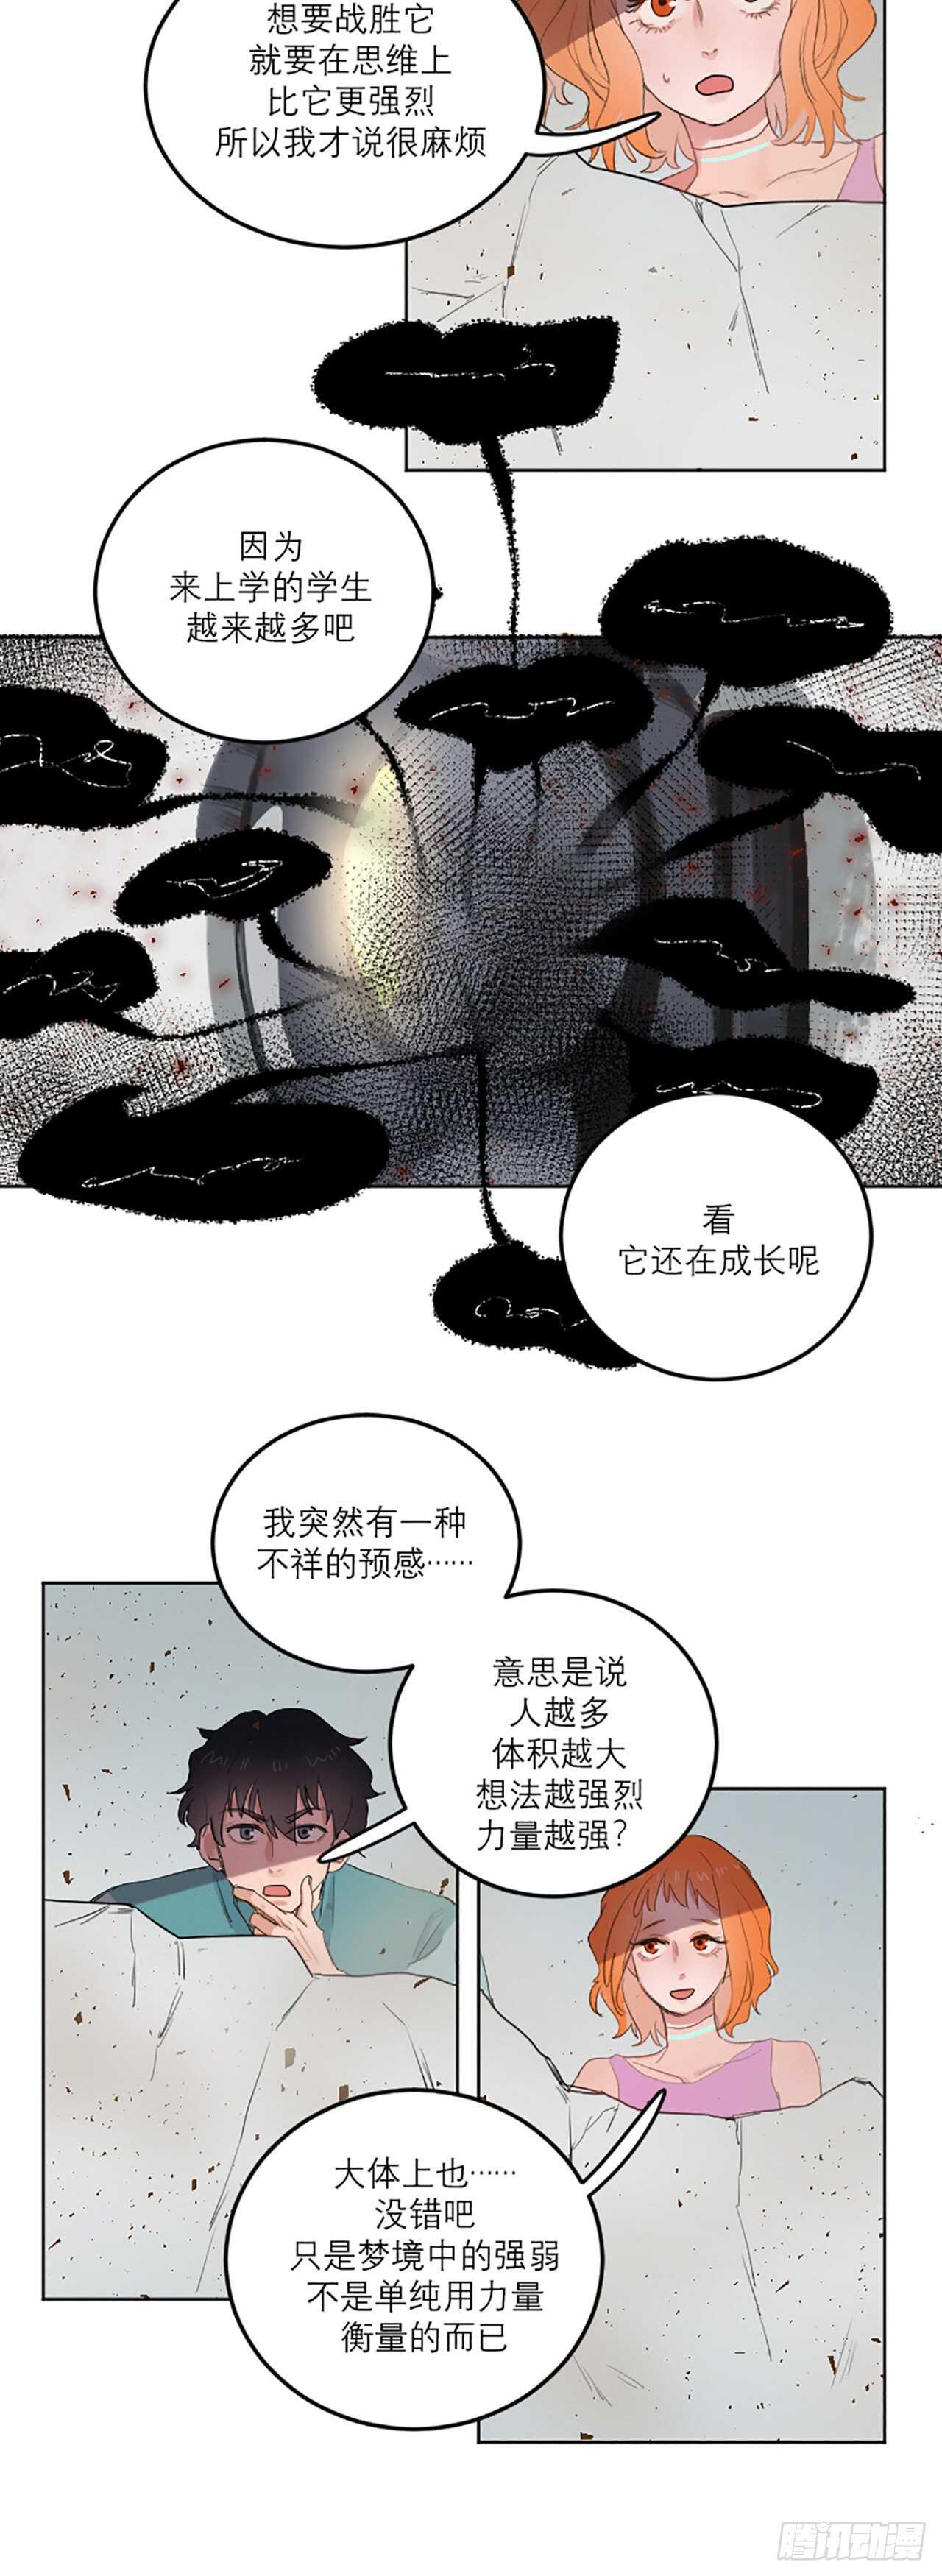 合夢 - Vol.13 - 3